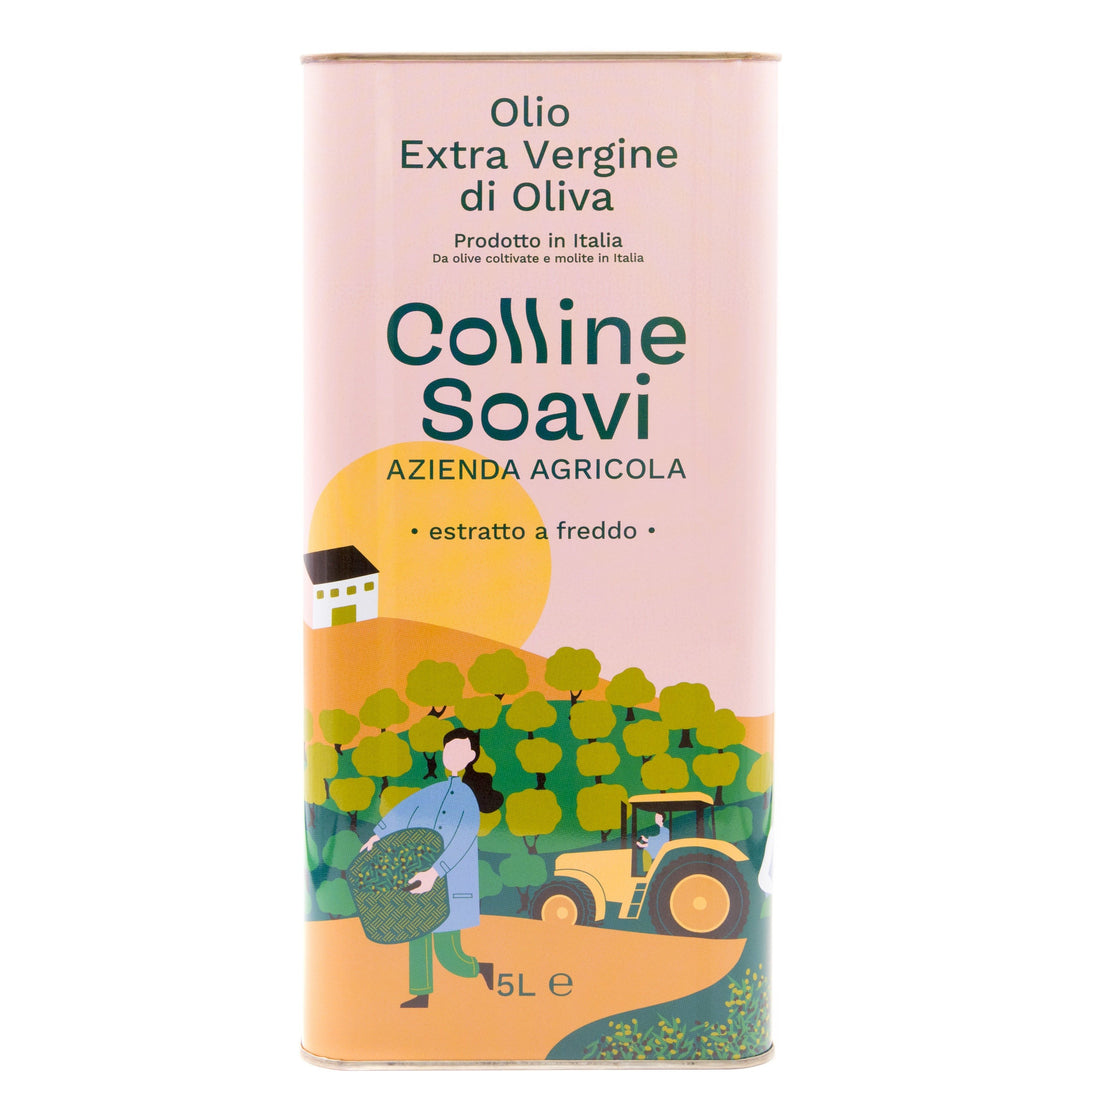 Olio Extravergine di Oliva Colline Soavi, Latta 5L - 2022/2023